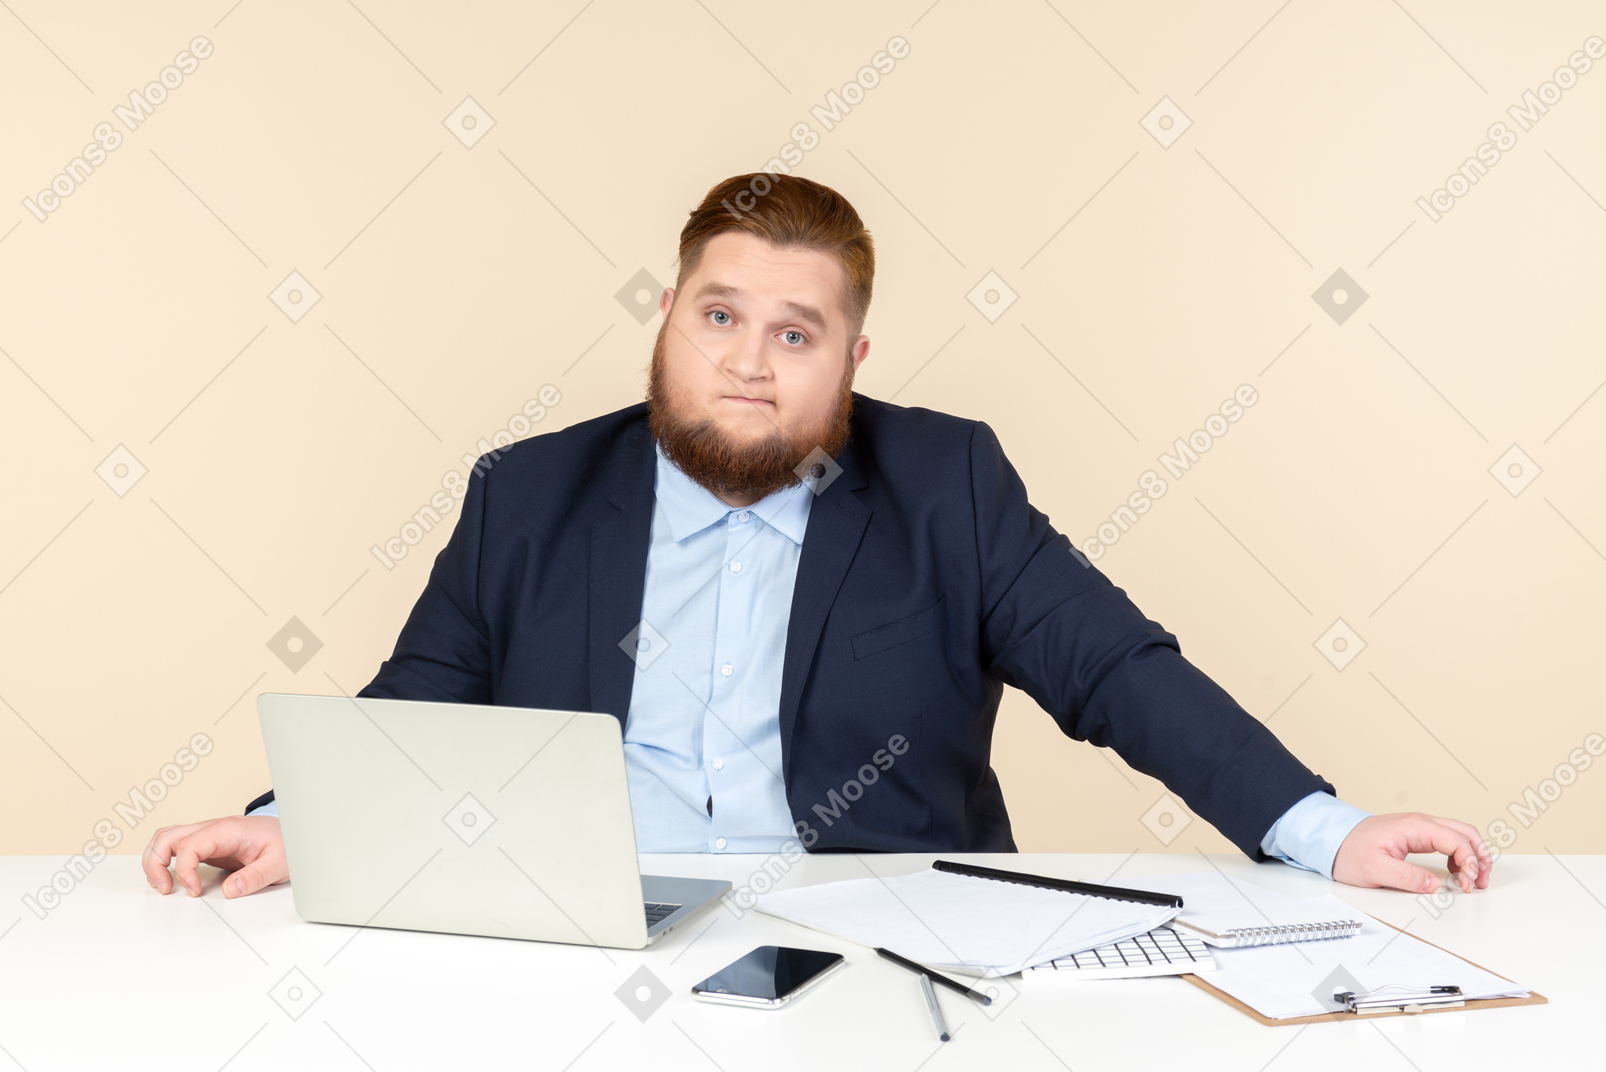 Preocupado joven trabajador de oficina con sobrepeso sentado en el escritorio de la oficina